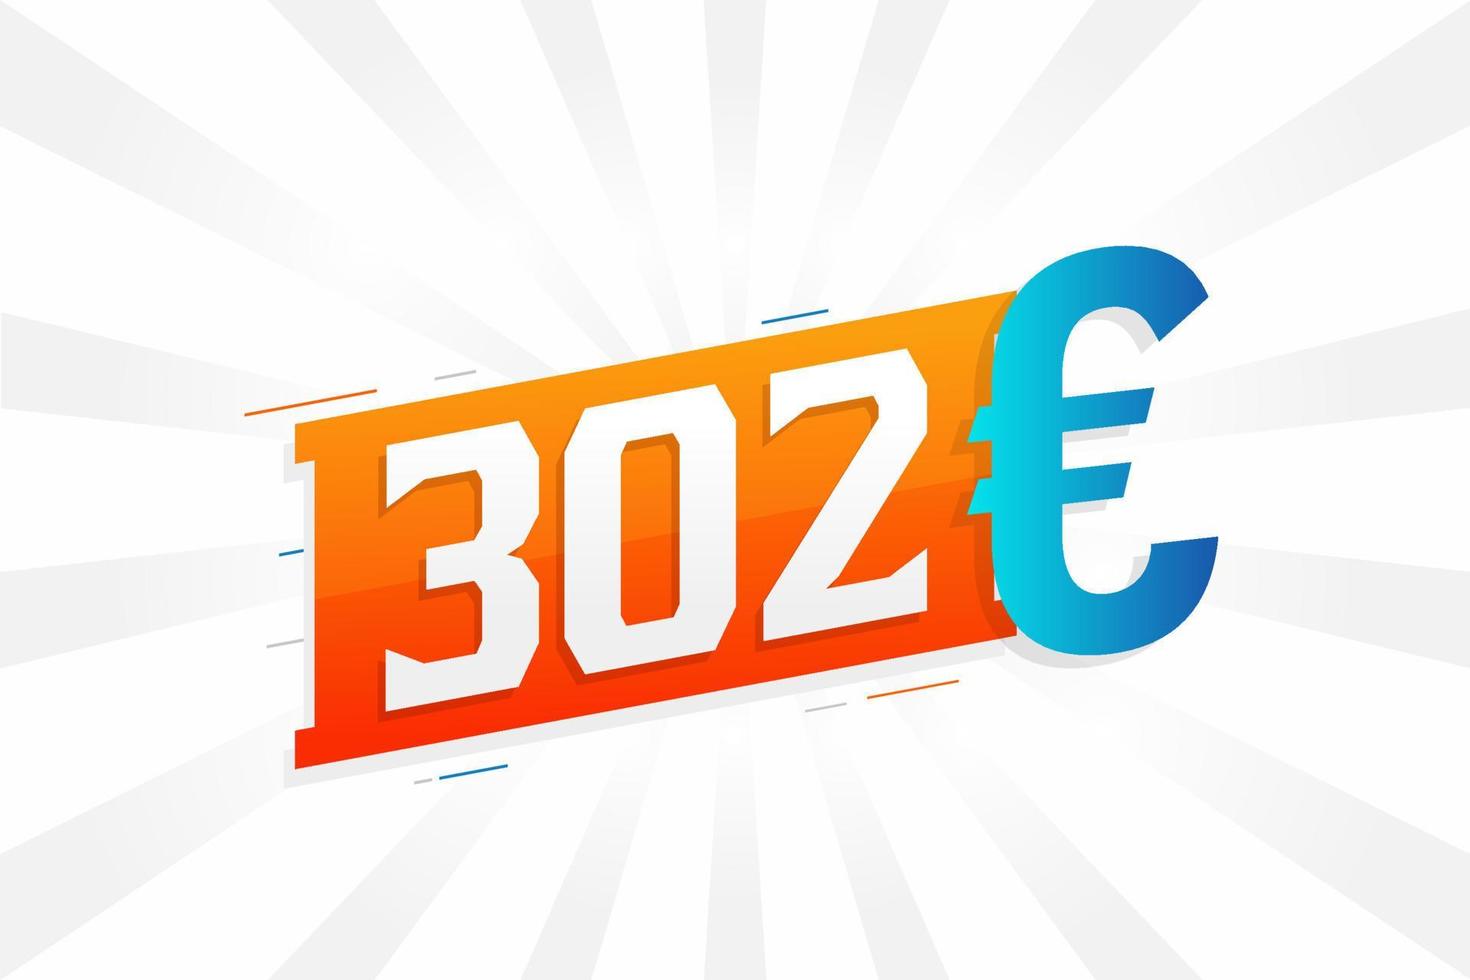 Symbole de texte vectoriel de devise 302 euros. 302 euros vecteur de stock d'argent de l'union européenne